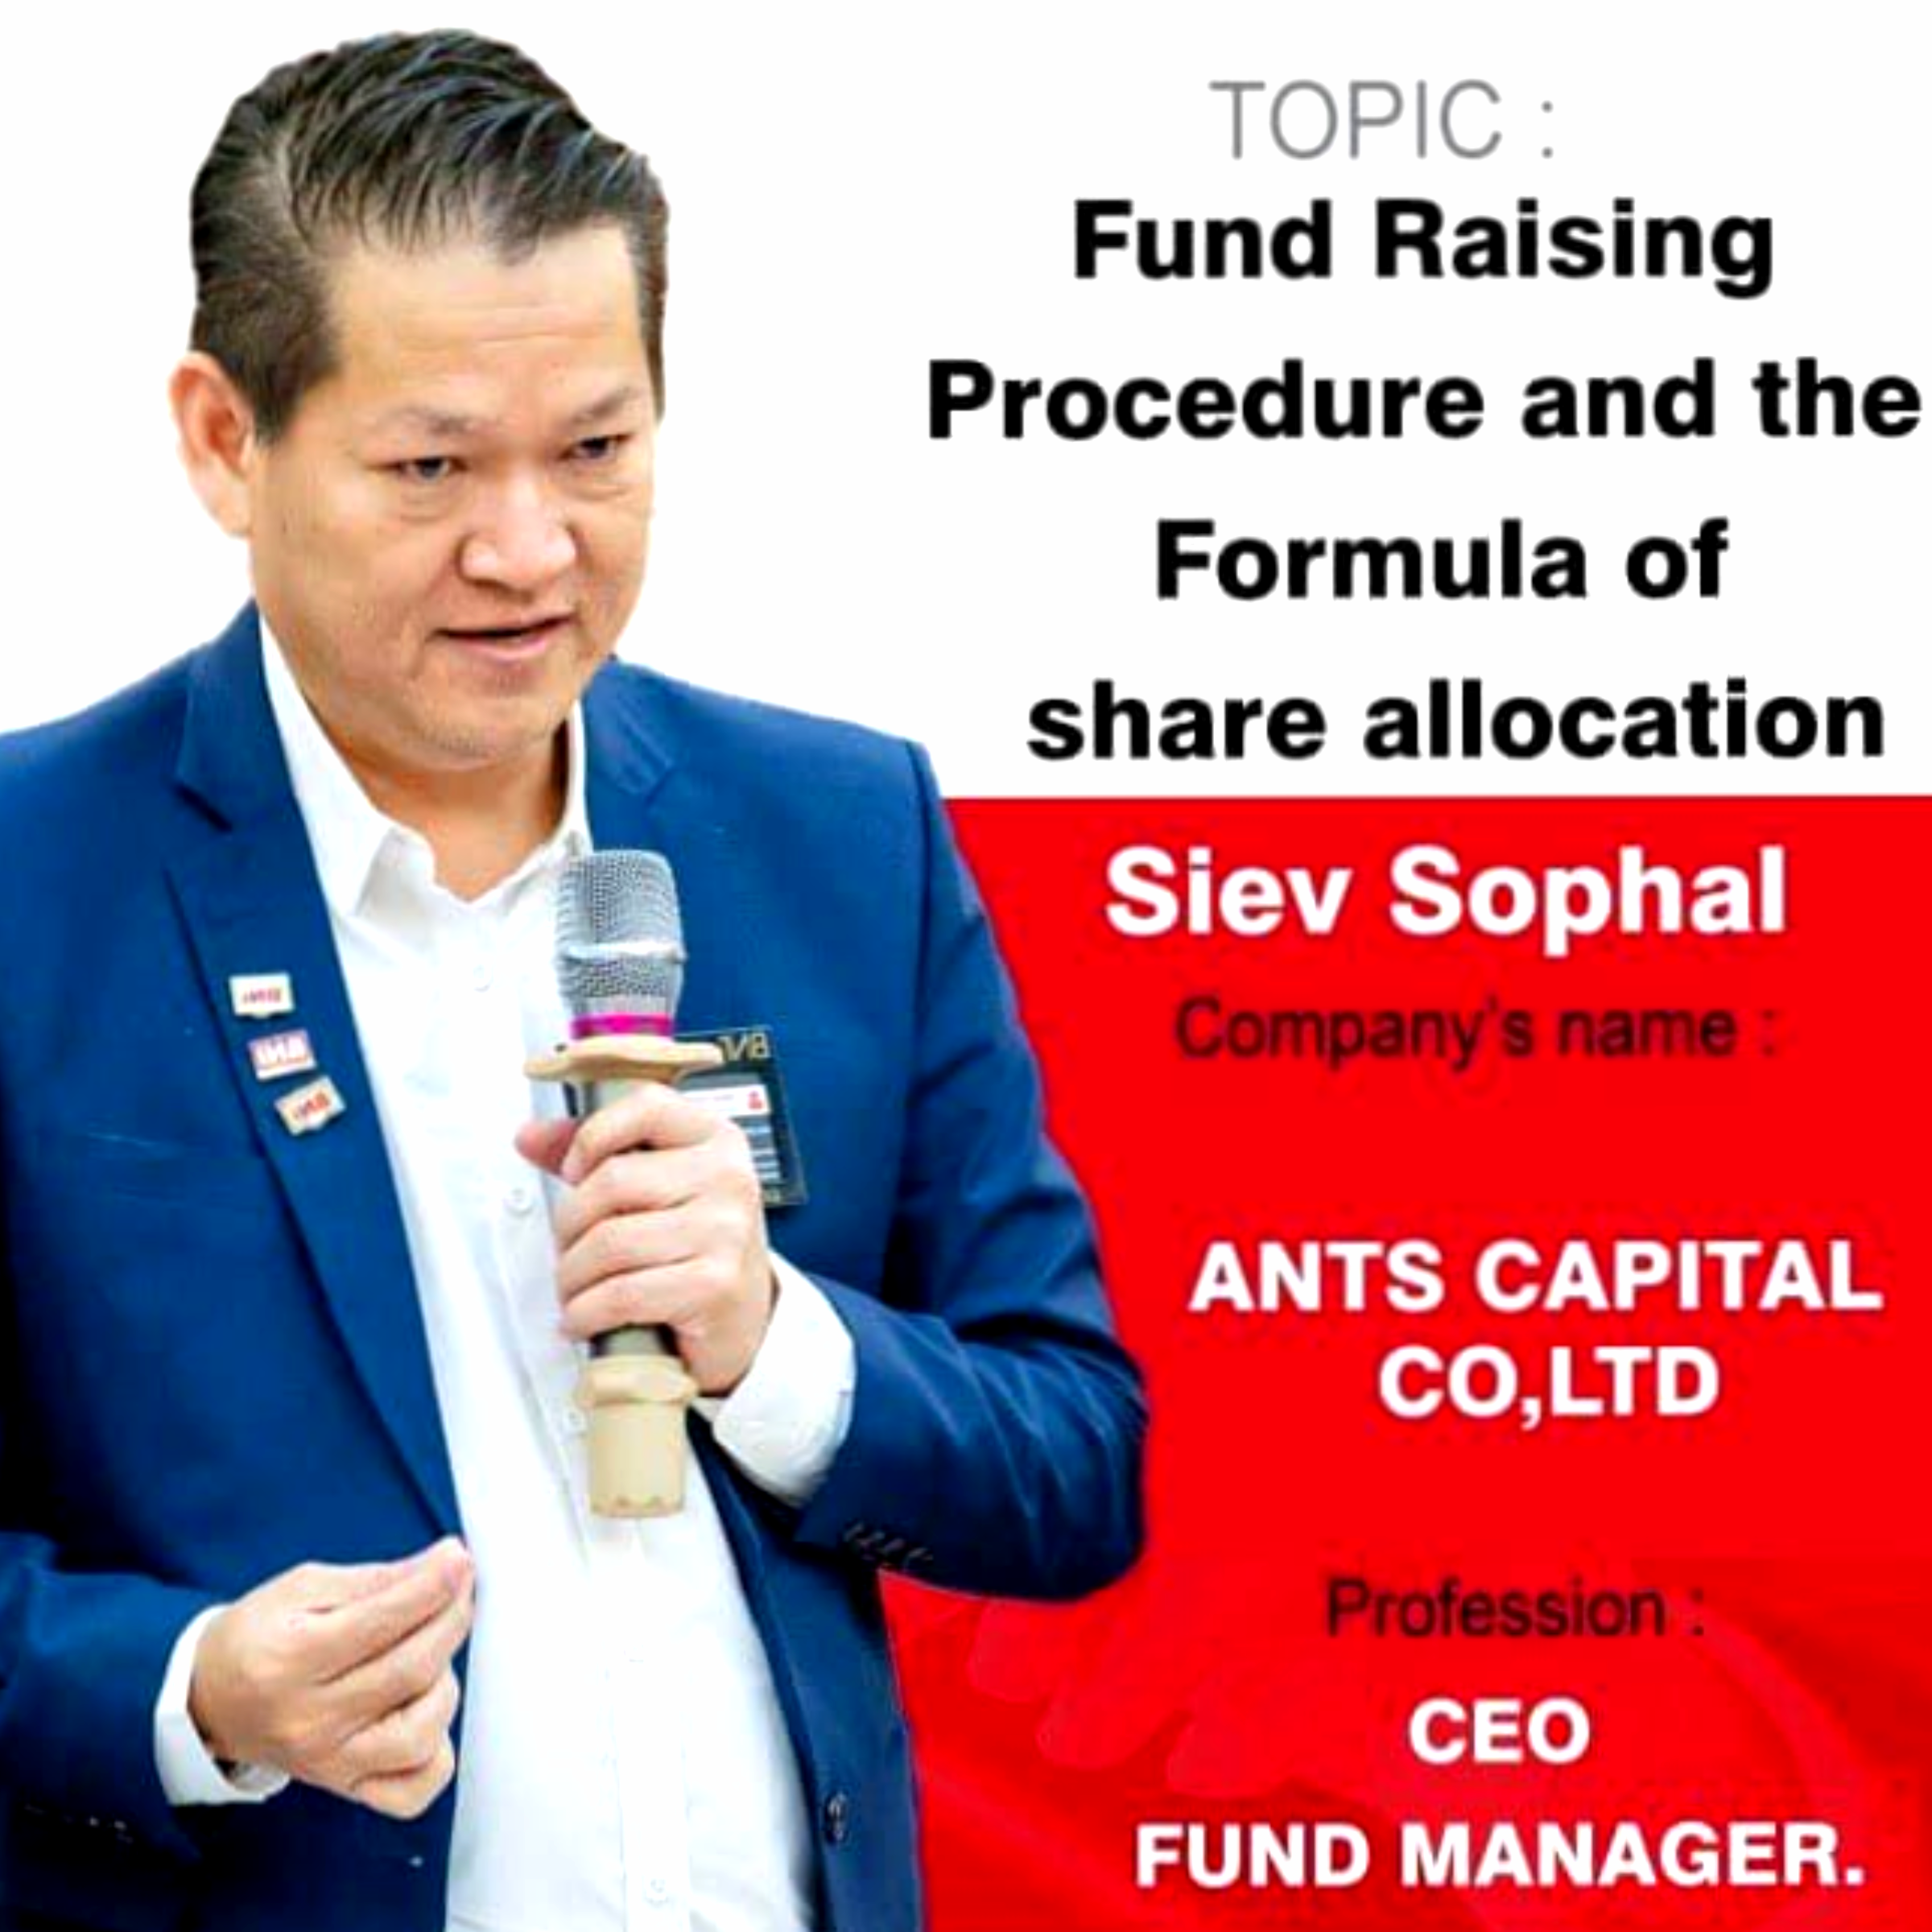  នីតិវិធីការប្រមូលទុននិងការបែងចែកភាគហ៊ុន - Fund Raising Procedure and the Formula of share allocation 